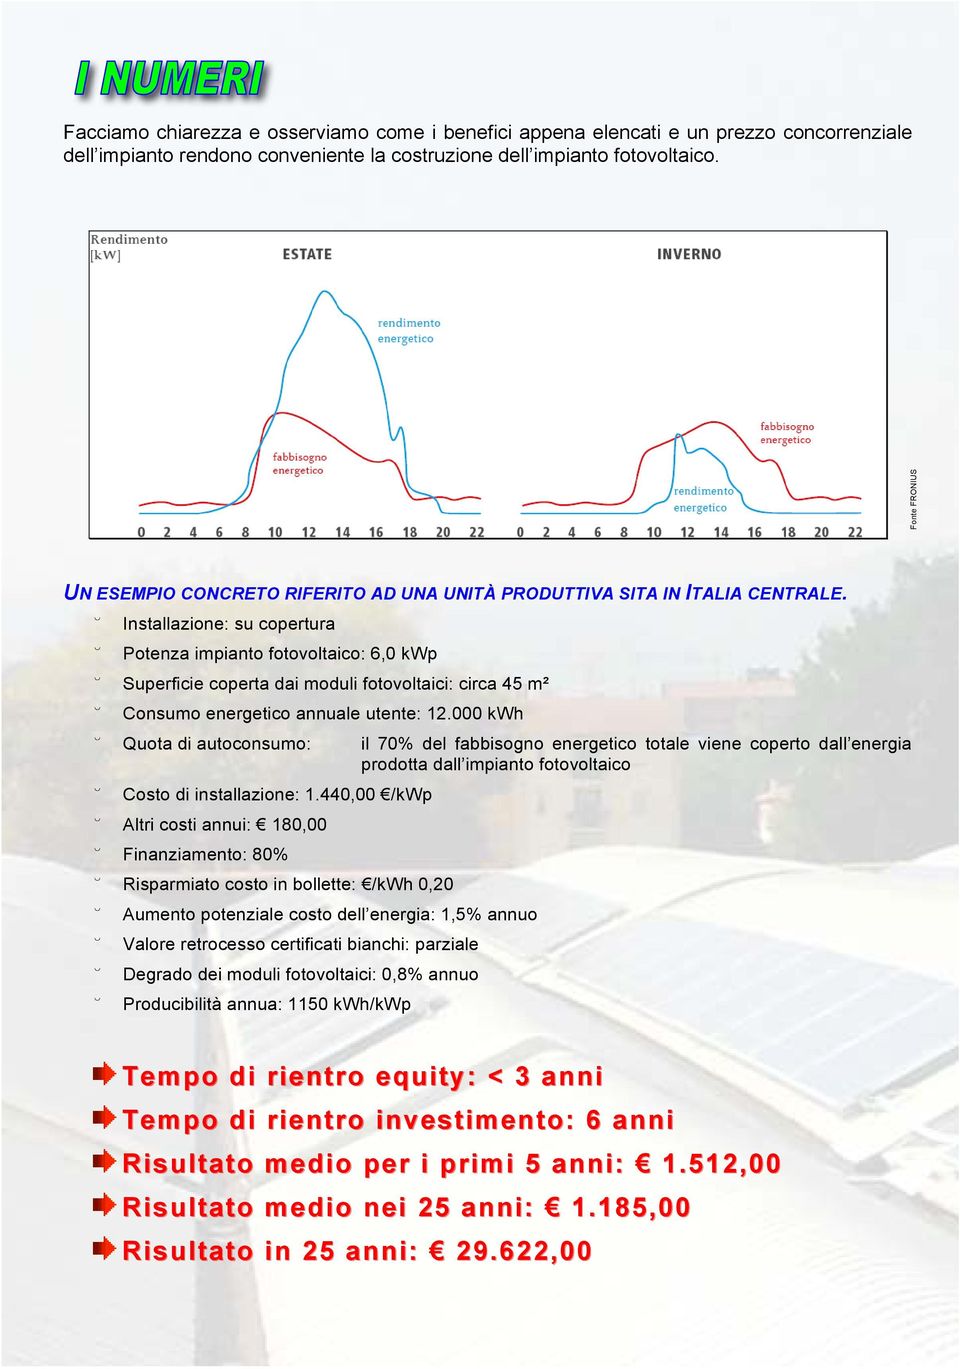 Installazione: su copertura Potenza impianto fotovoltaico: 6,0 kwp Superficie coperta dai moduli fotovoltaici: circa 45 m² Consumo energetico annuale utente: 12.